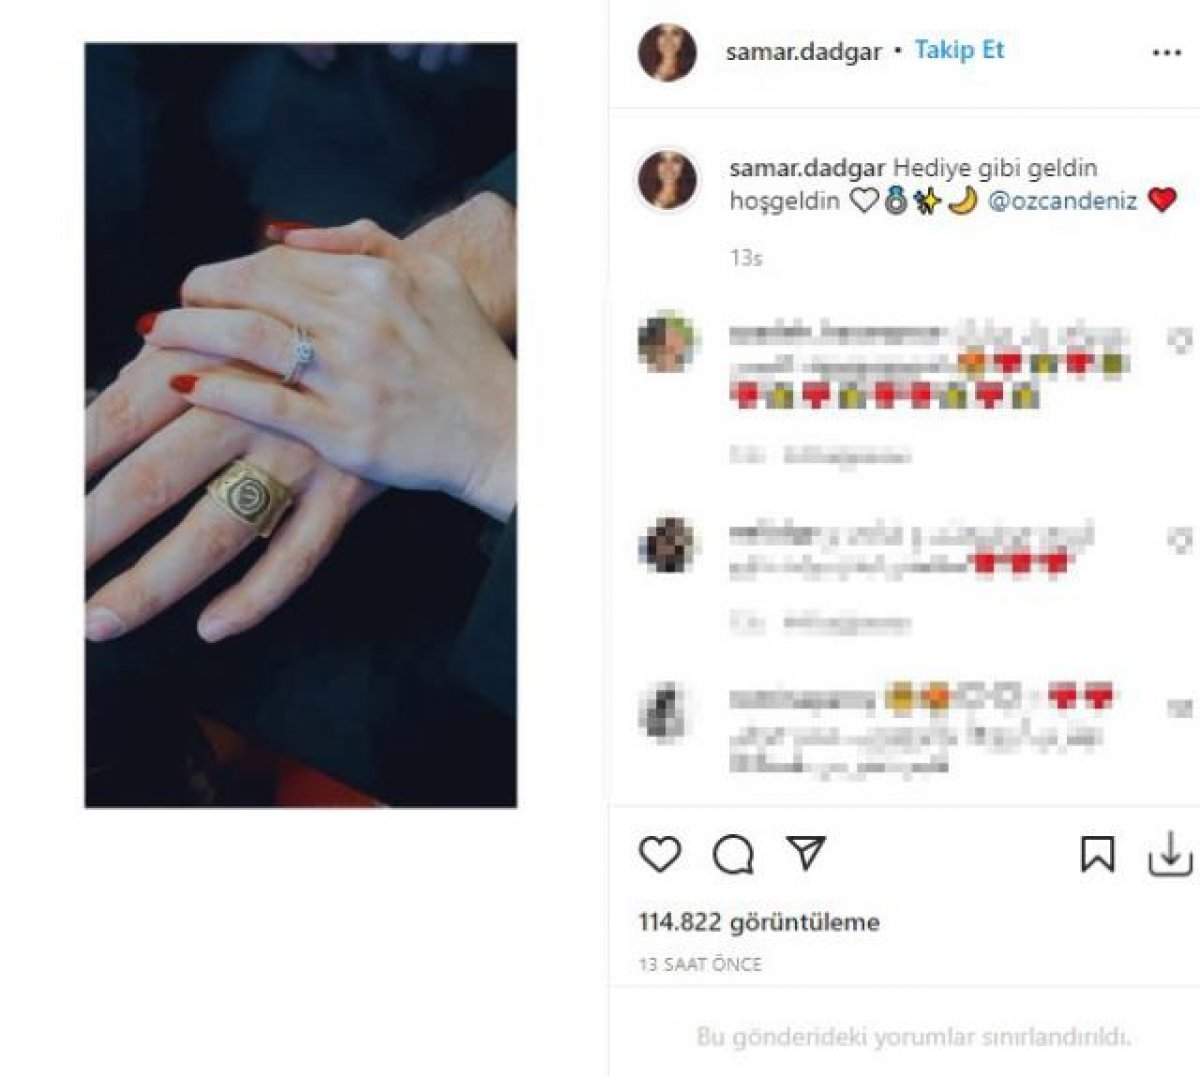 Özcan Deniz den 23 yaş küçük sevgilisine evlilik teklifi #1